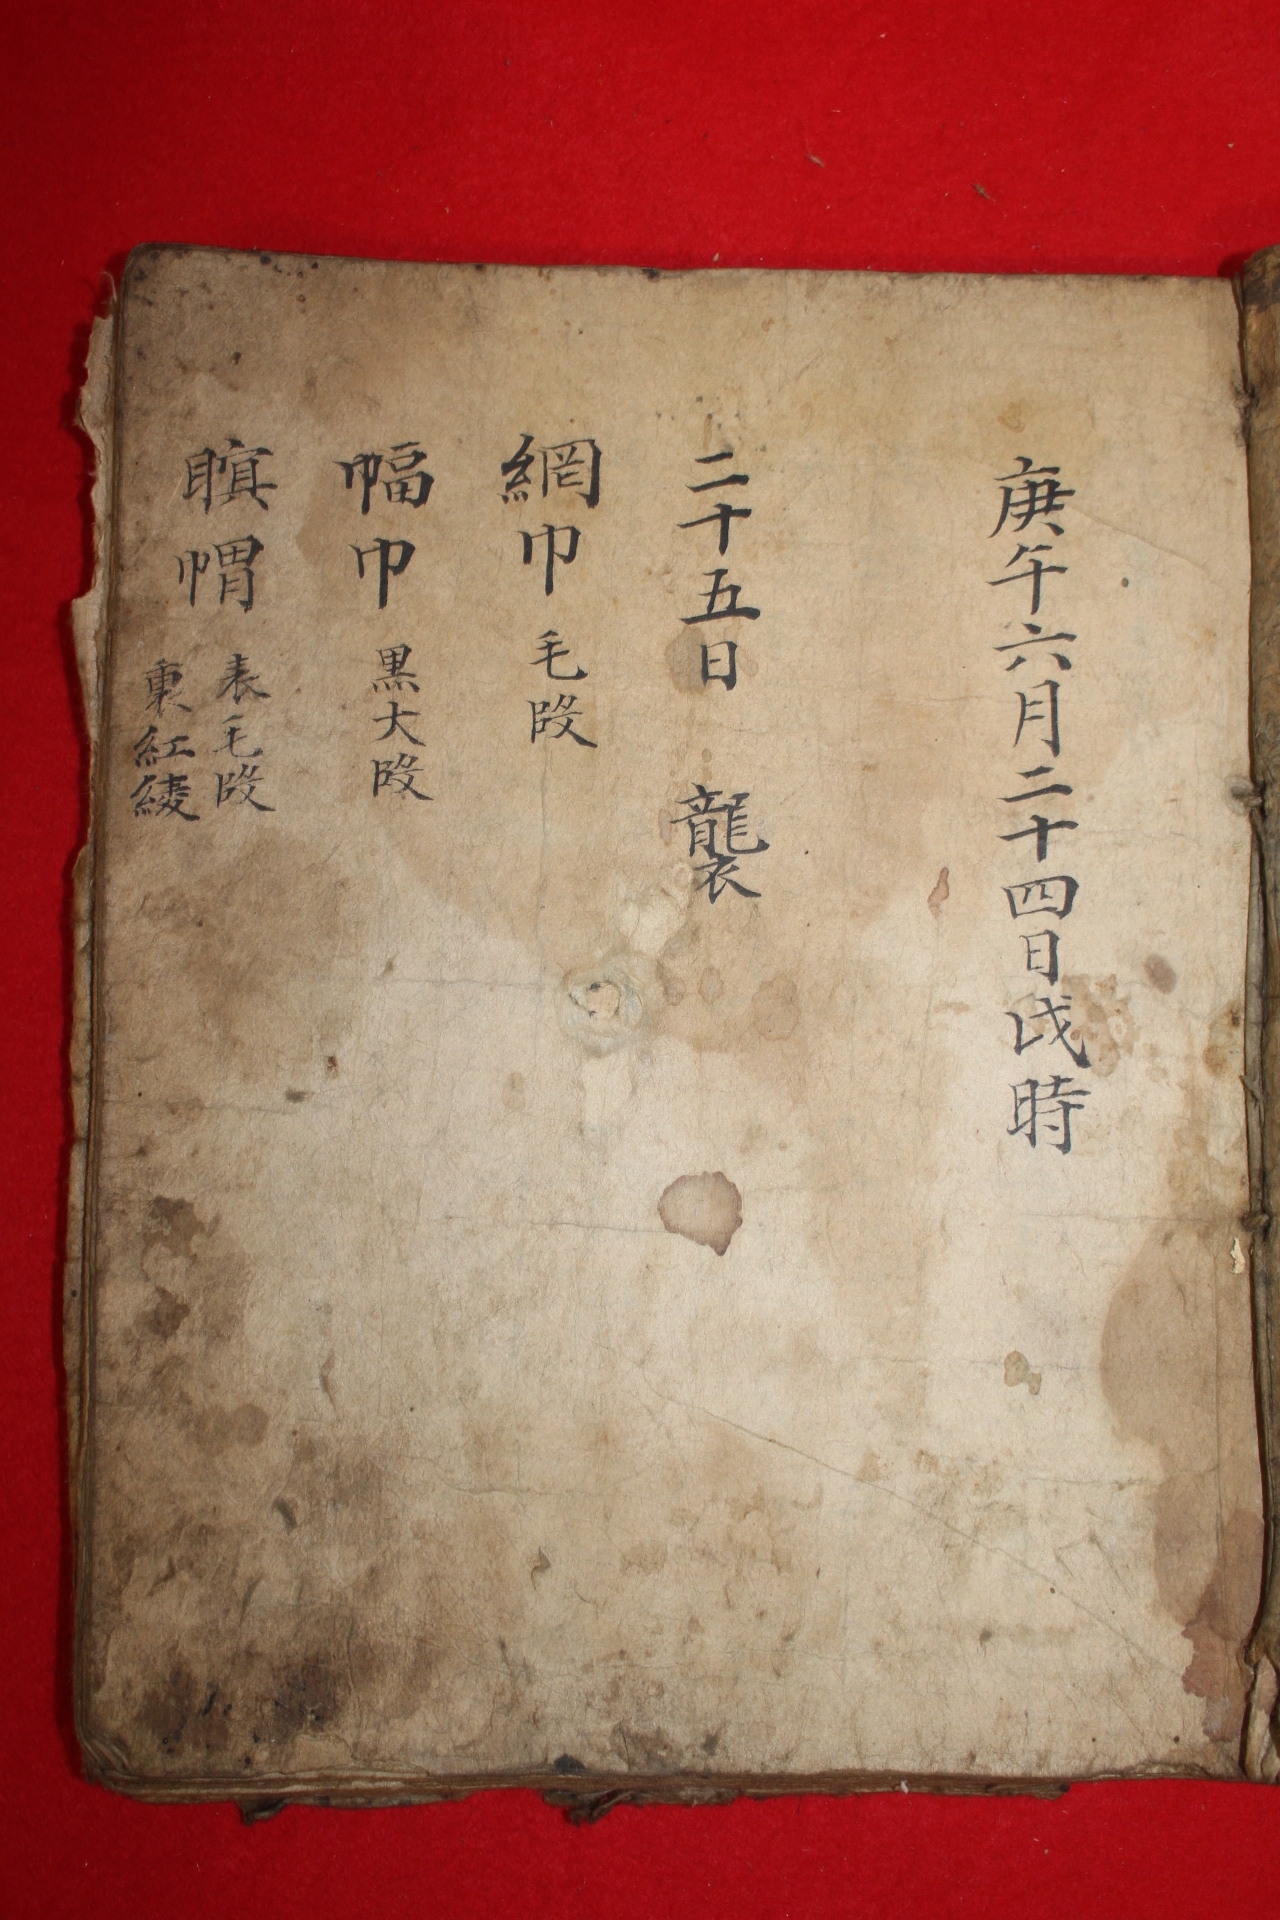 1690년 선산도호부사 곽공의 장례절차와 사용된 옷의 치수까지 기록된 고필사본 1책